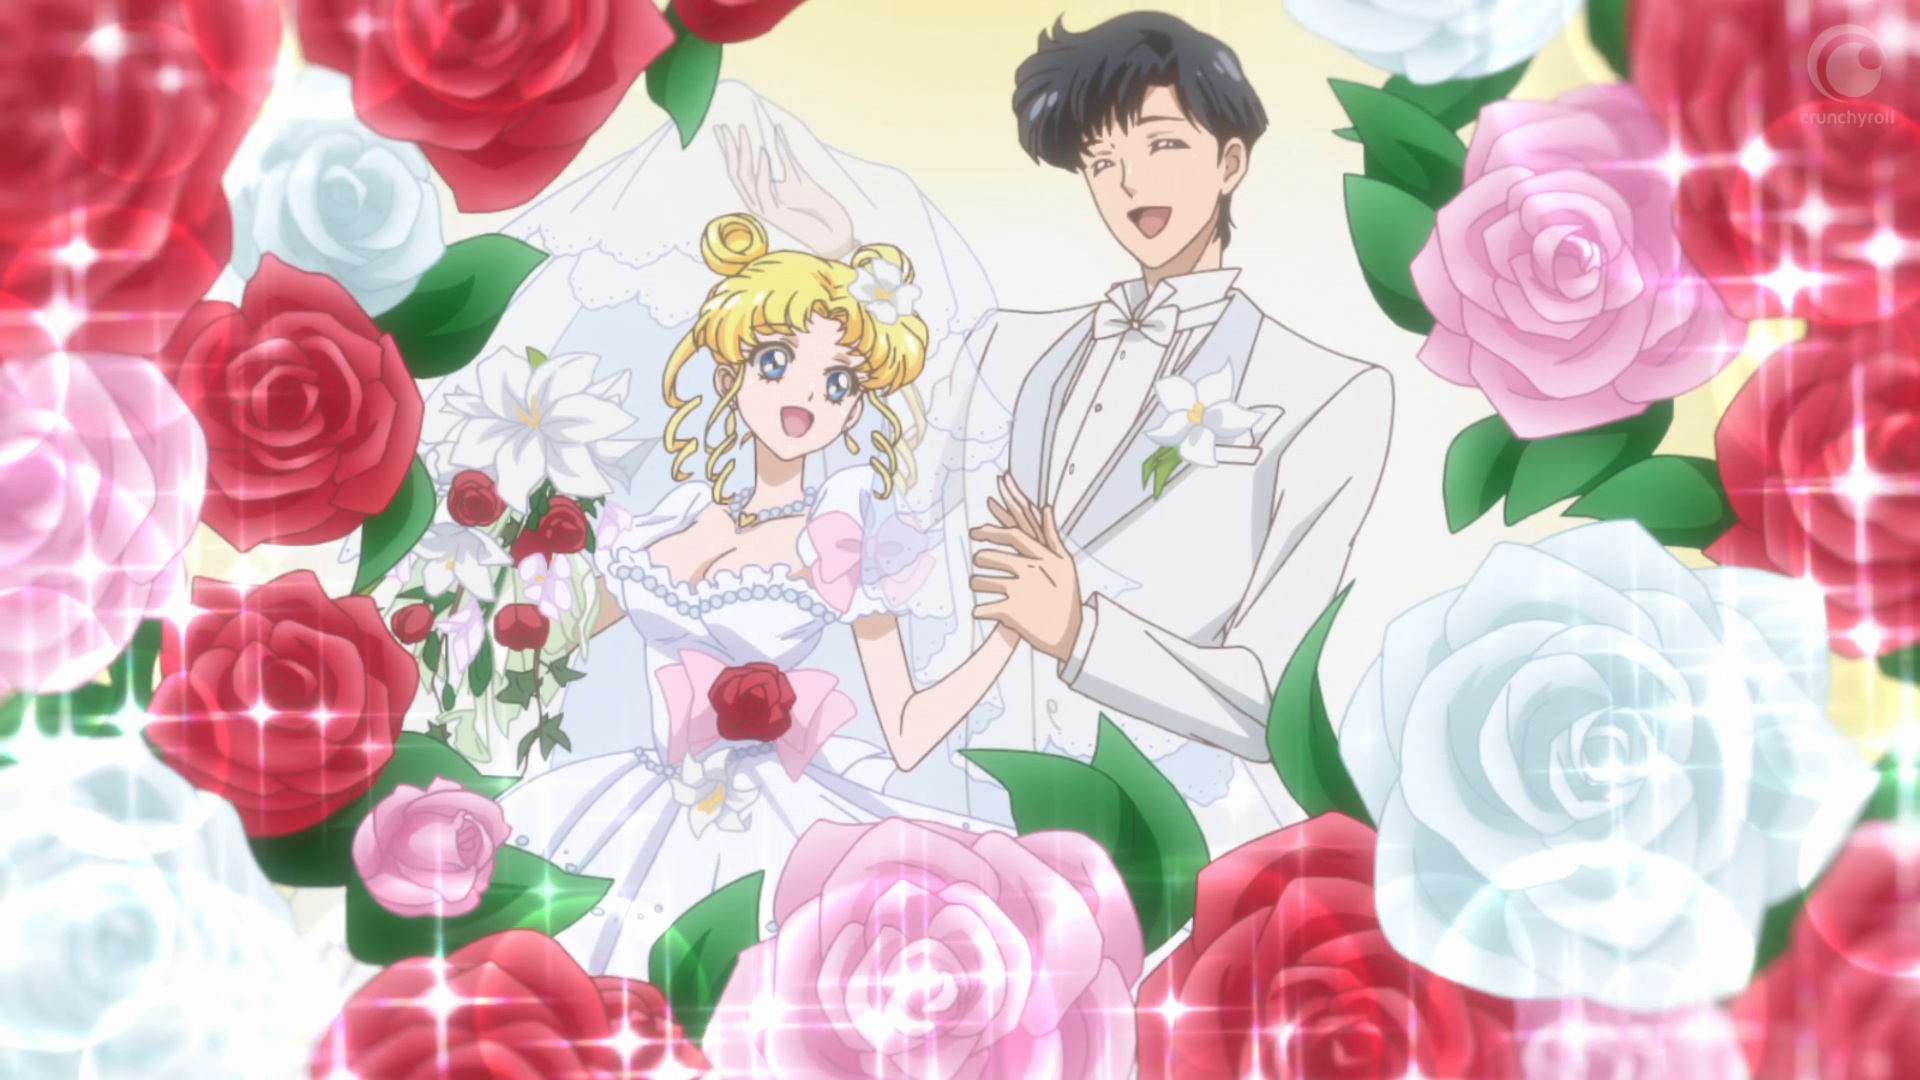 Sailor Moon Crystal Act 27 - Usagi and Mamoru’s wedding.